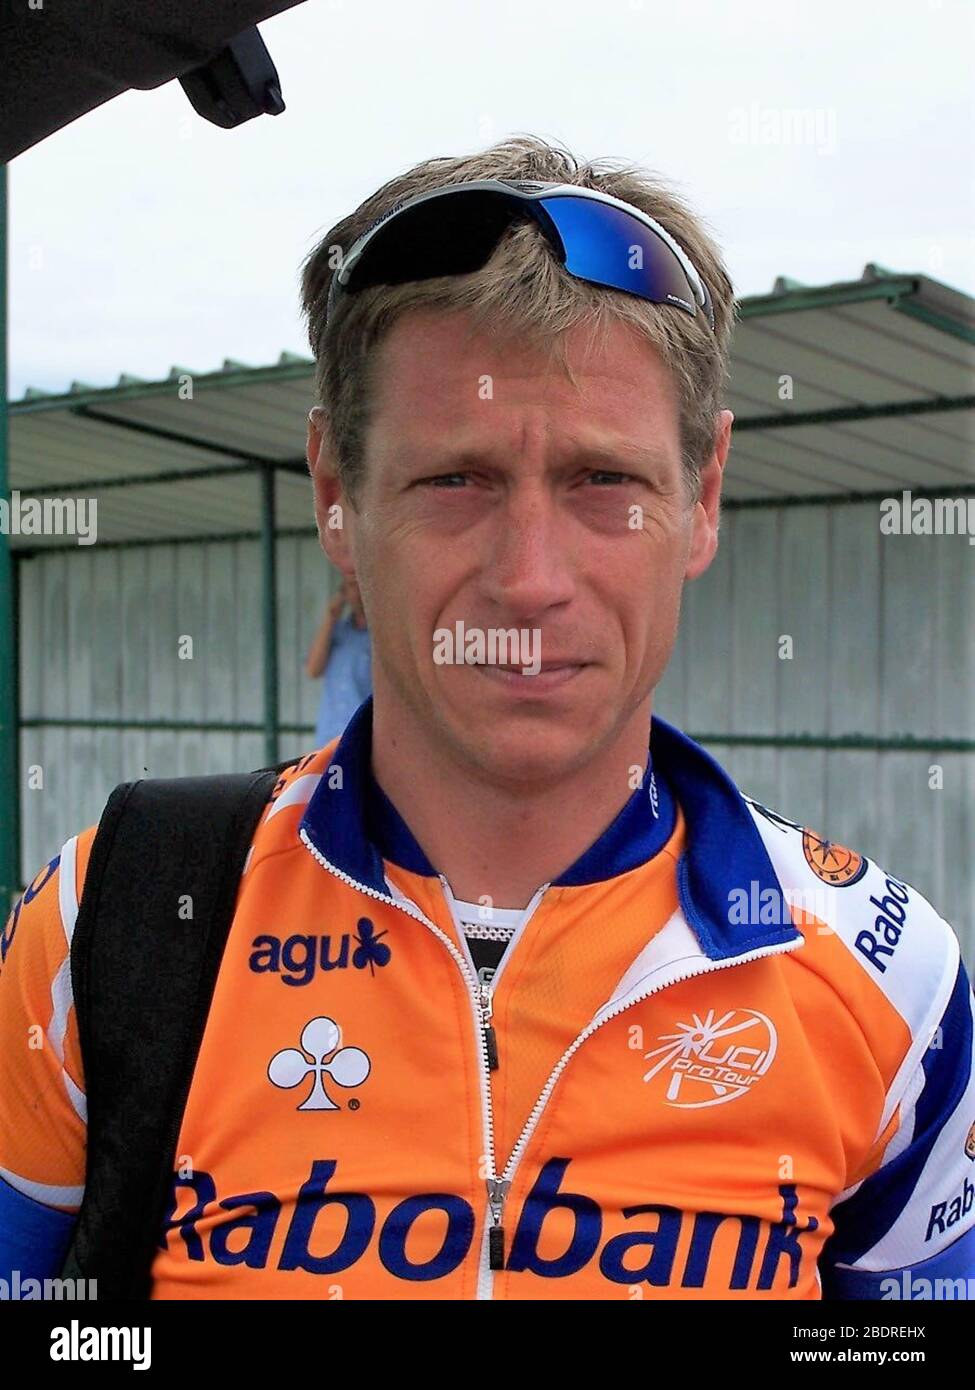 Thorwald Veneberg di Rabobank durante il Gran Premio Plouay 2007, gara ciclistica, Plouay - Plouay (210,1 km) il 02 settembre 2007 a Plouay, Francia - Foto Laurent Lairys / DPPI Foto Stock